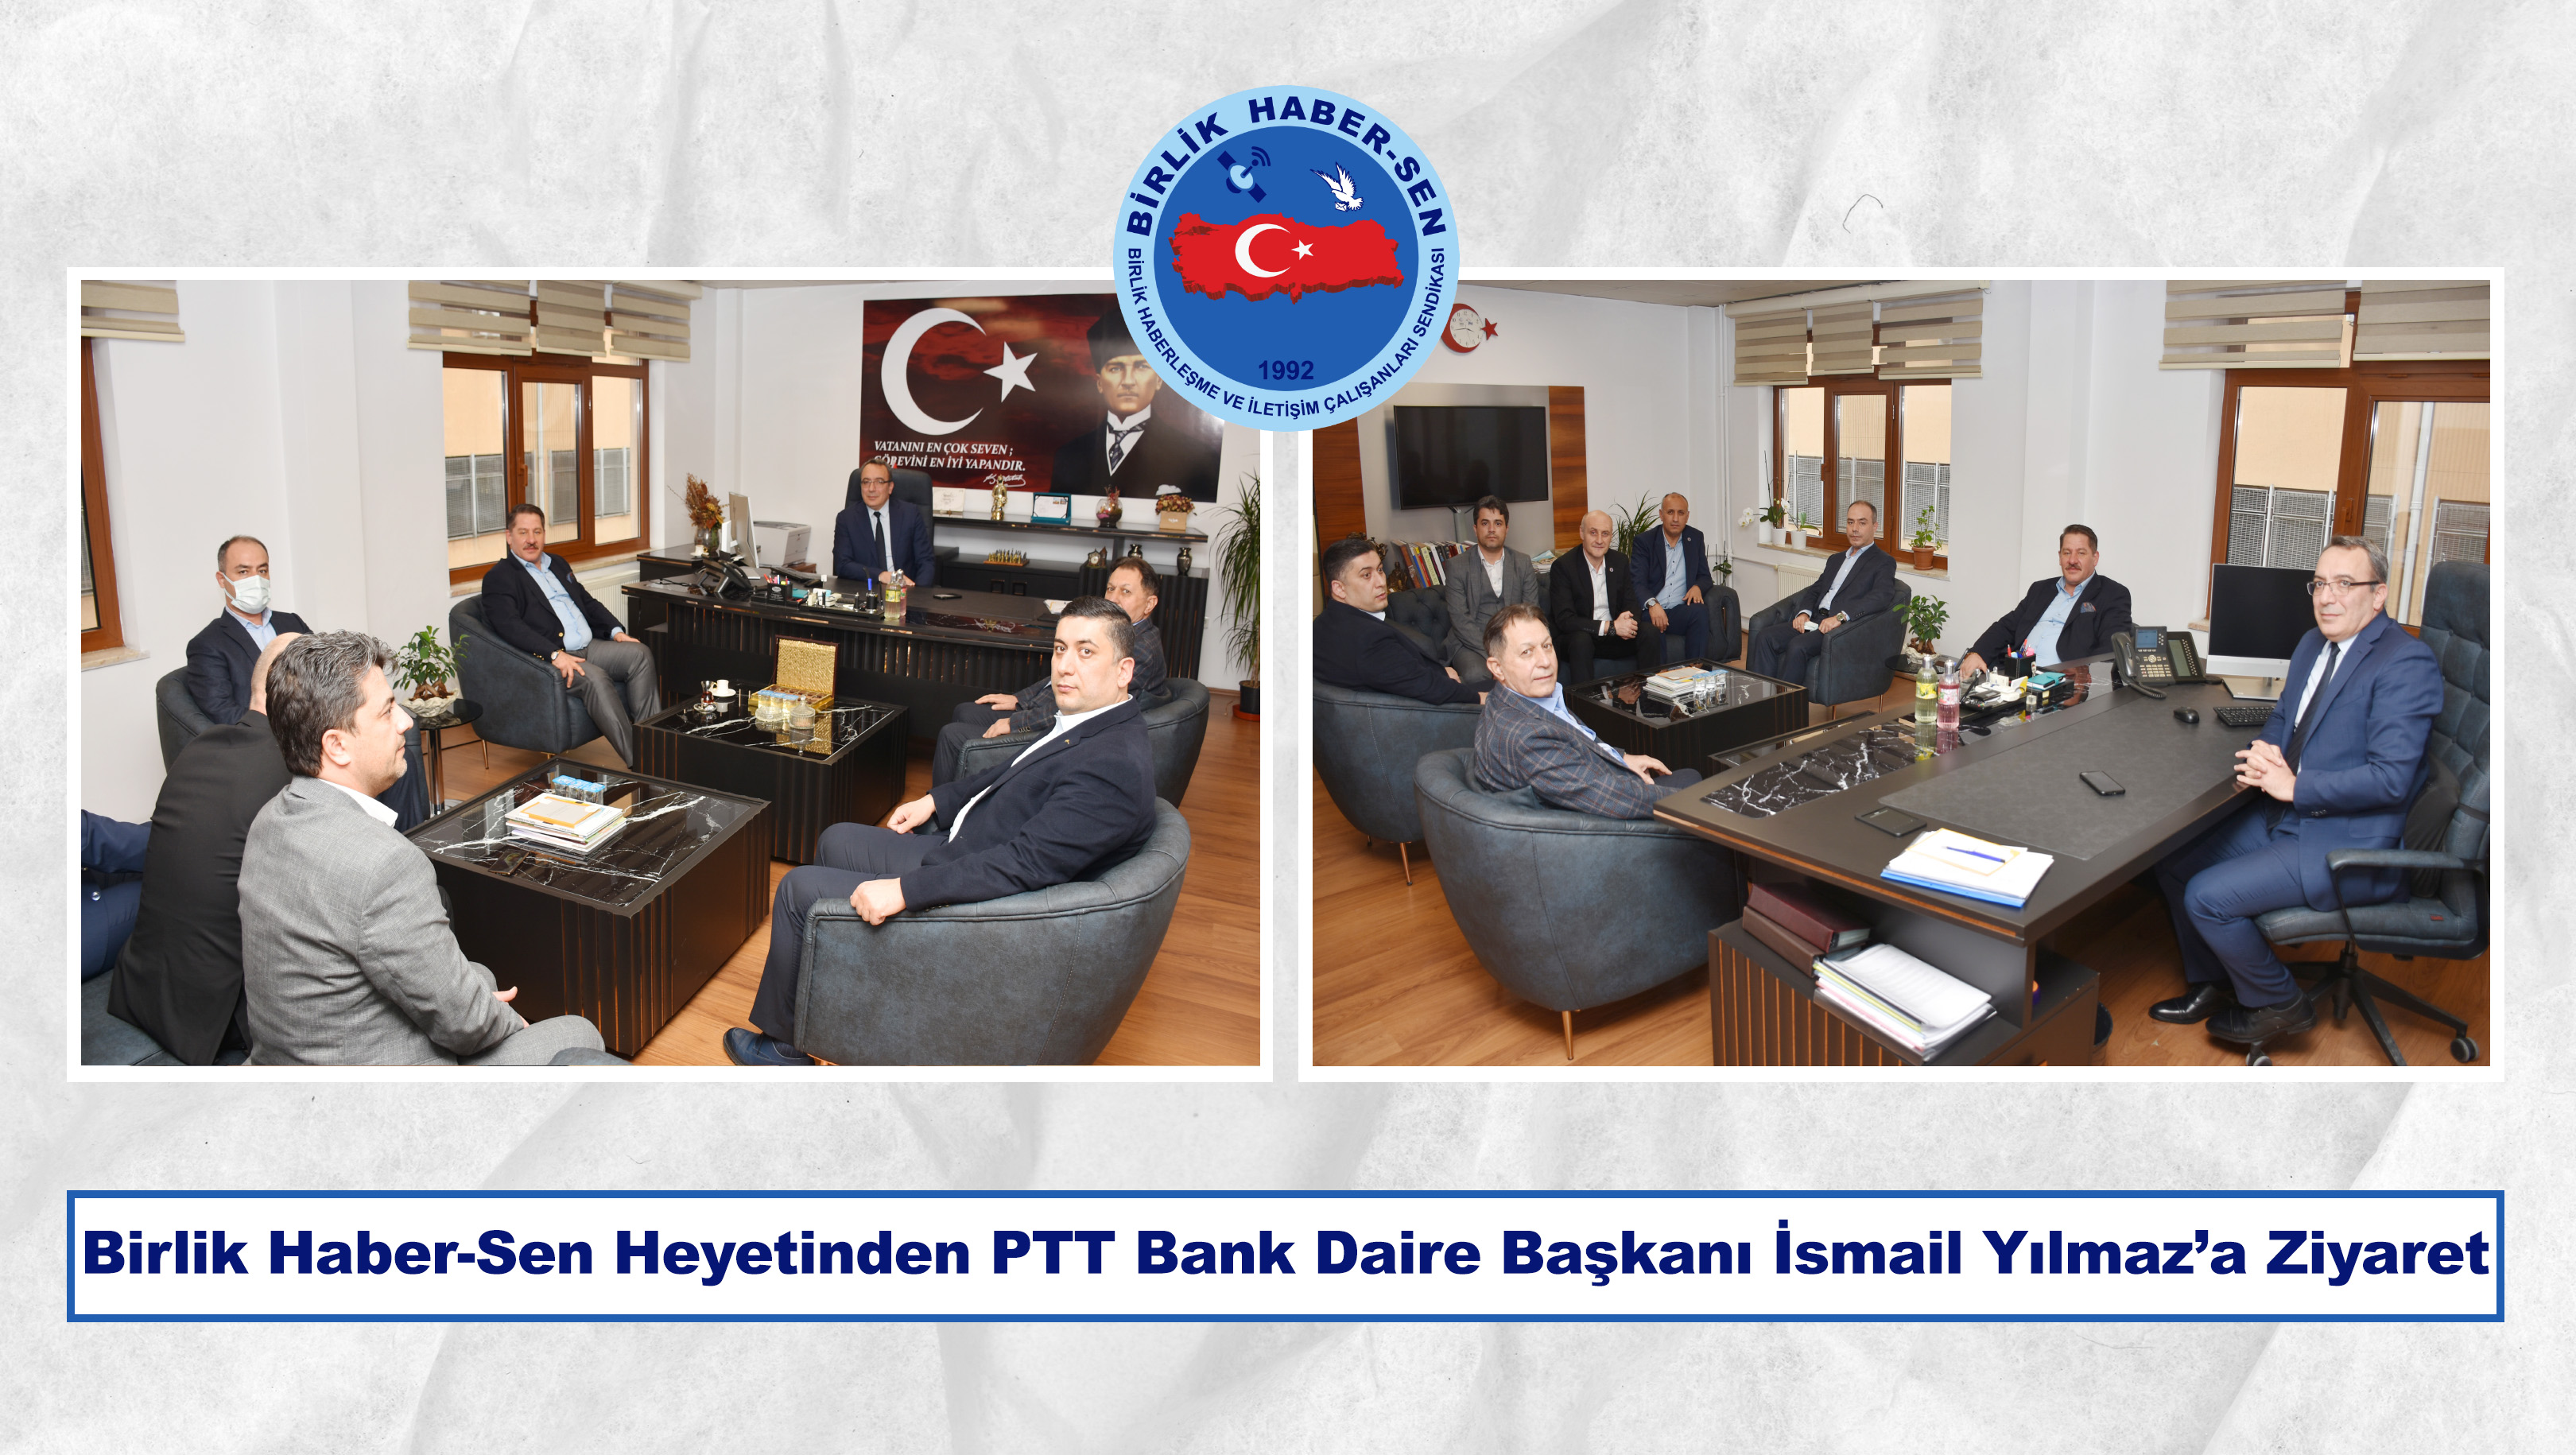 Birlik Haber-Sen Heyetinden PTT Bank Daire Başkanı İsmail Yılmaz’a Ziyaret